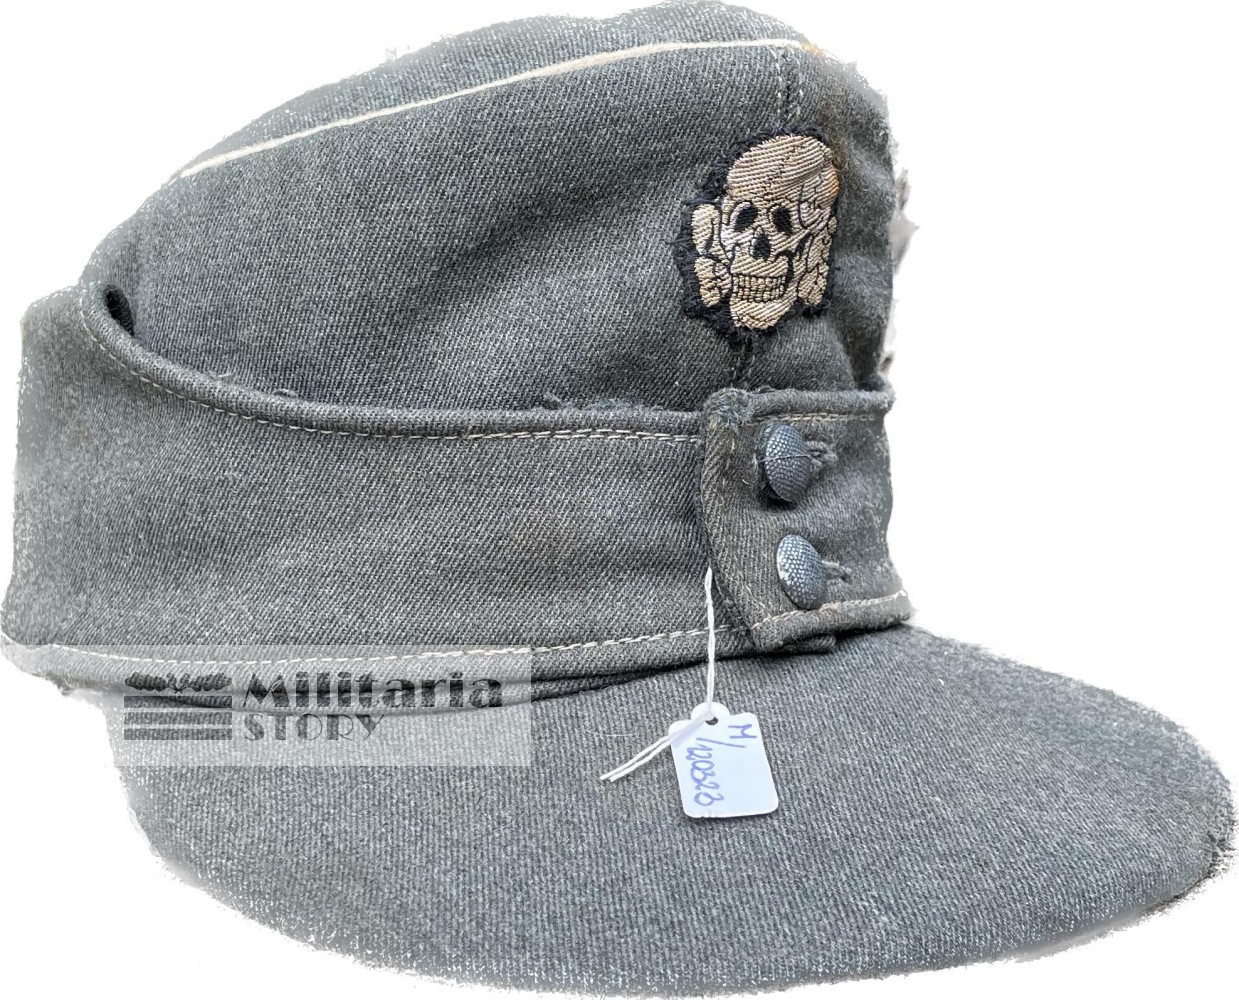 Waffen SS Officer field cap - Waffen SS Officer field cap: German Headgear